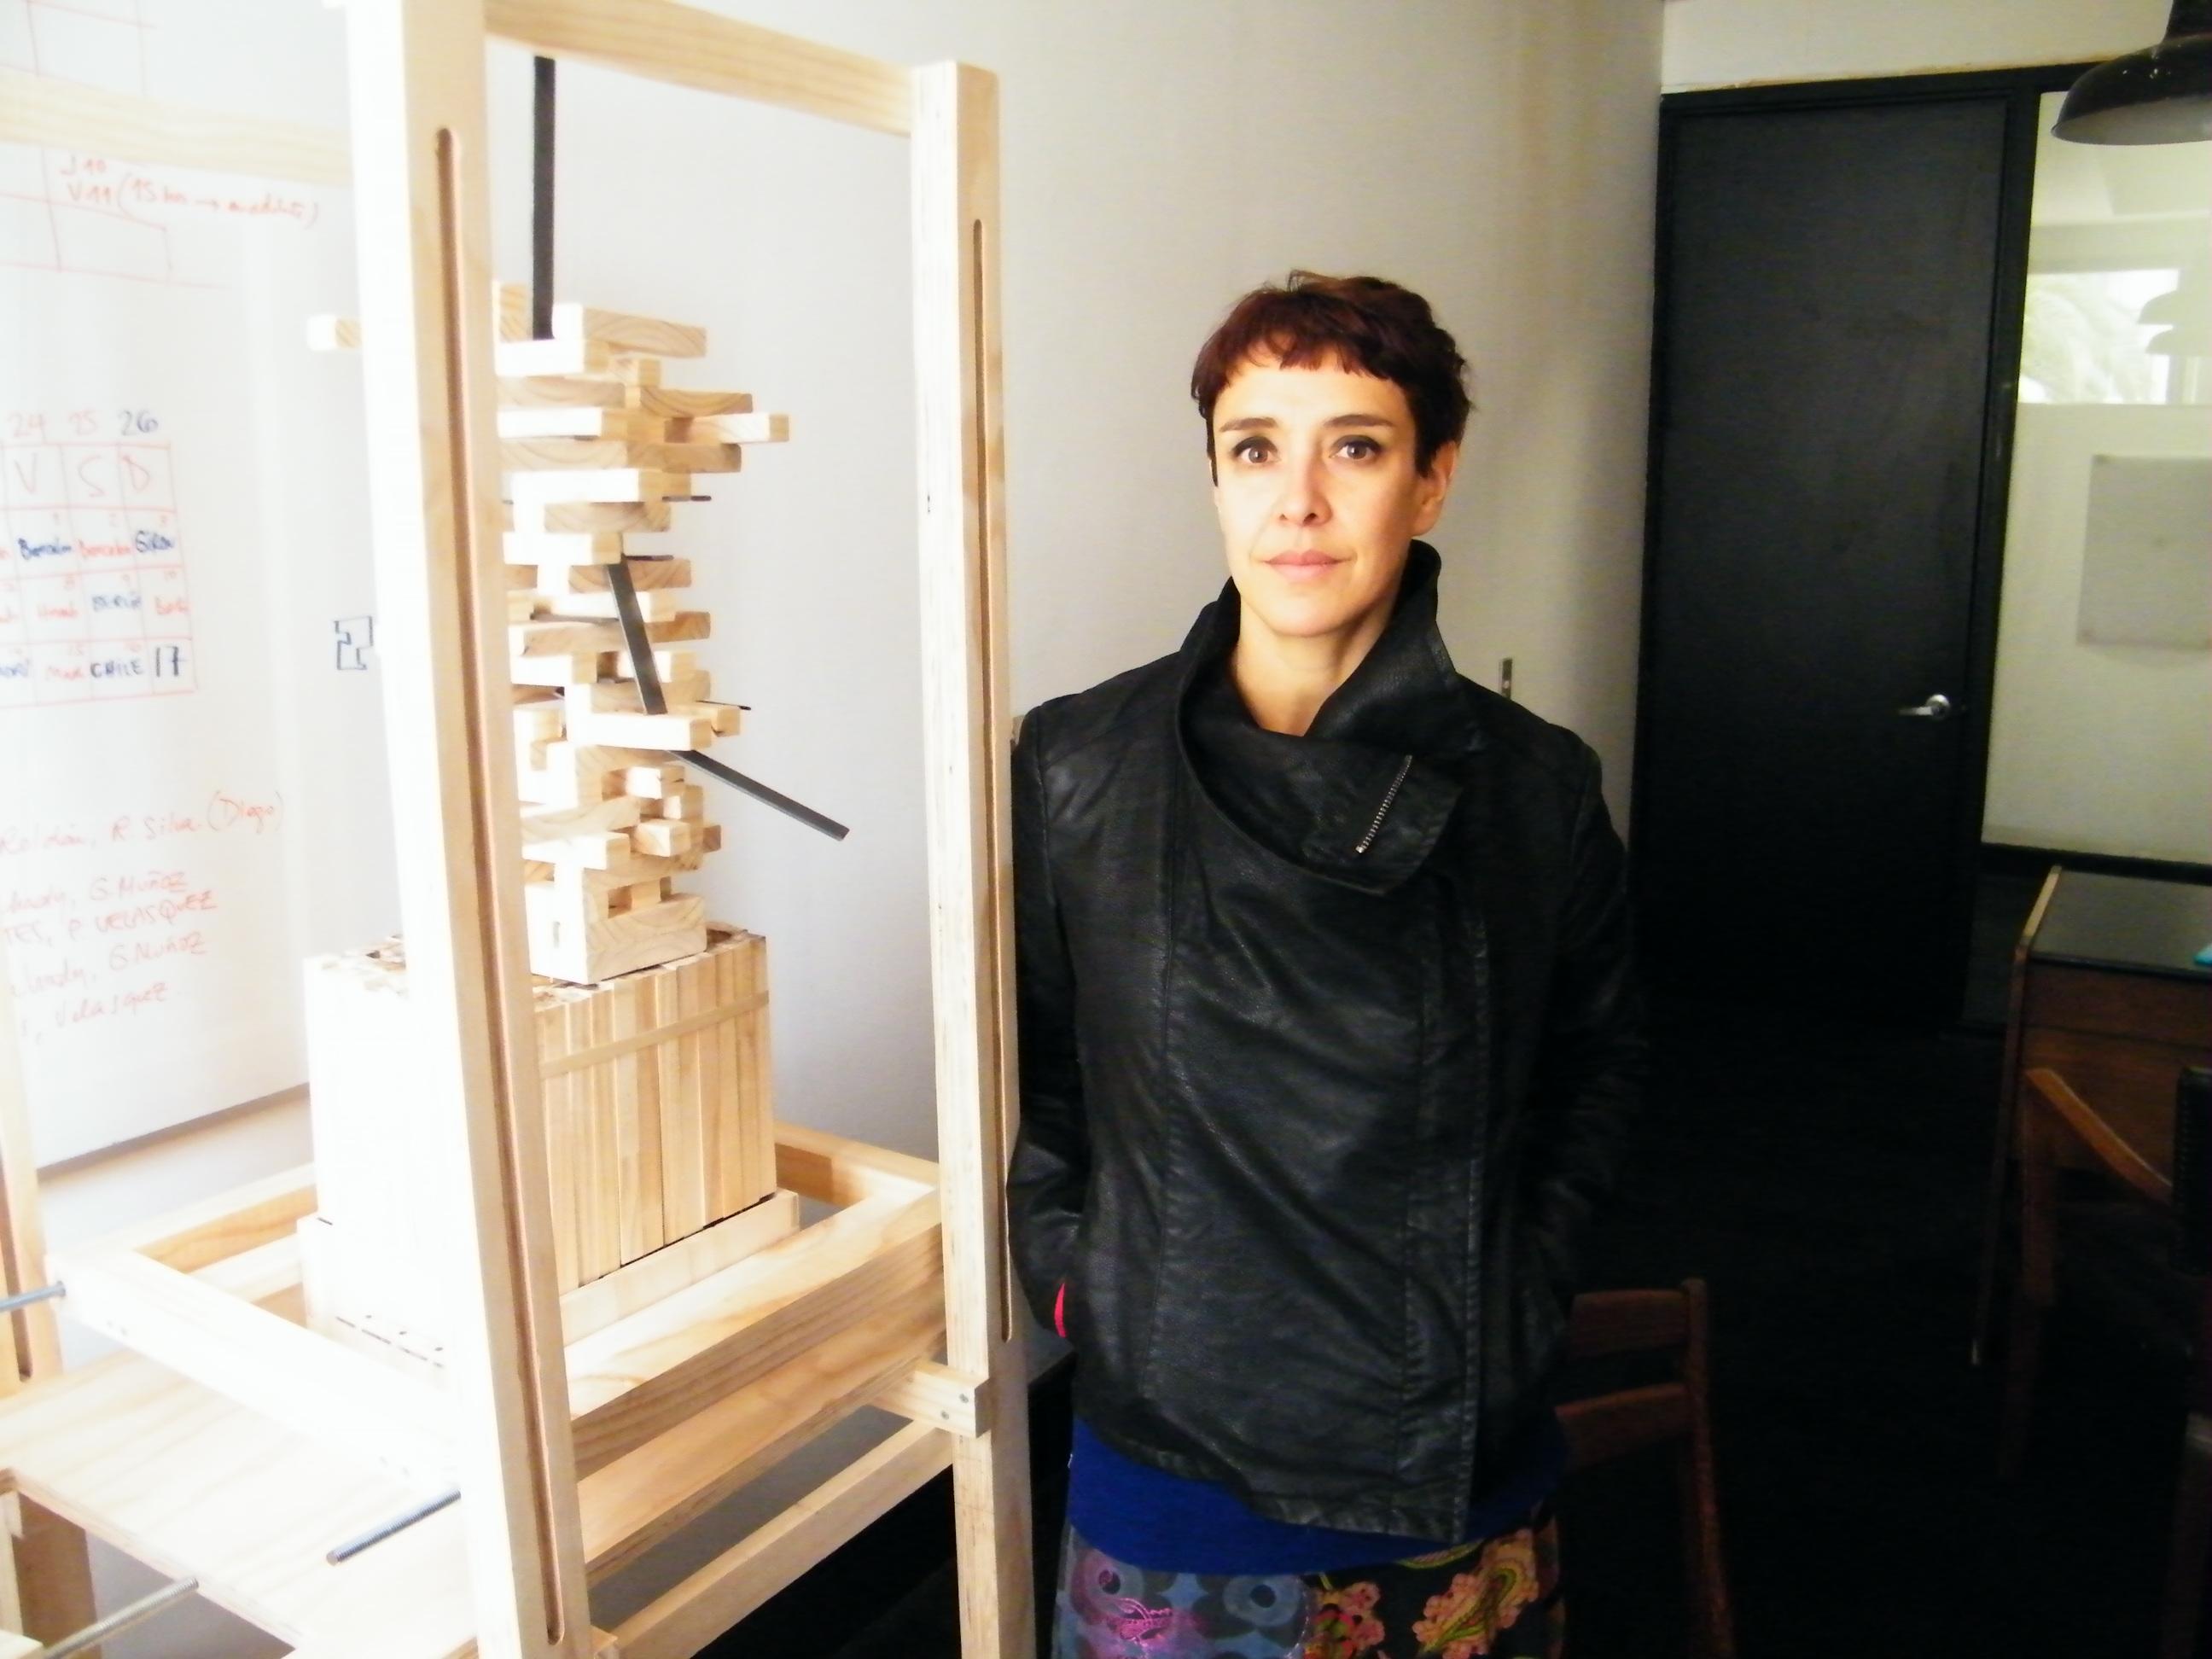 Cecilia Wolff junto a una de las máquinas que componen la muestra "Paracrafting".